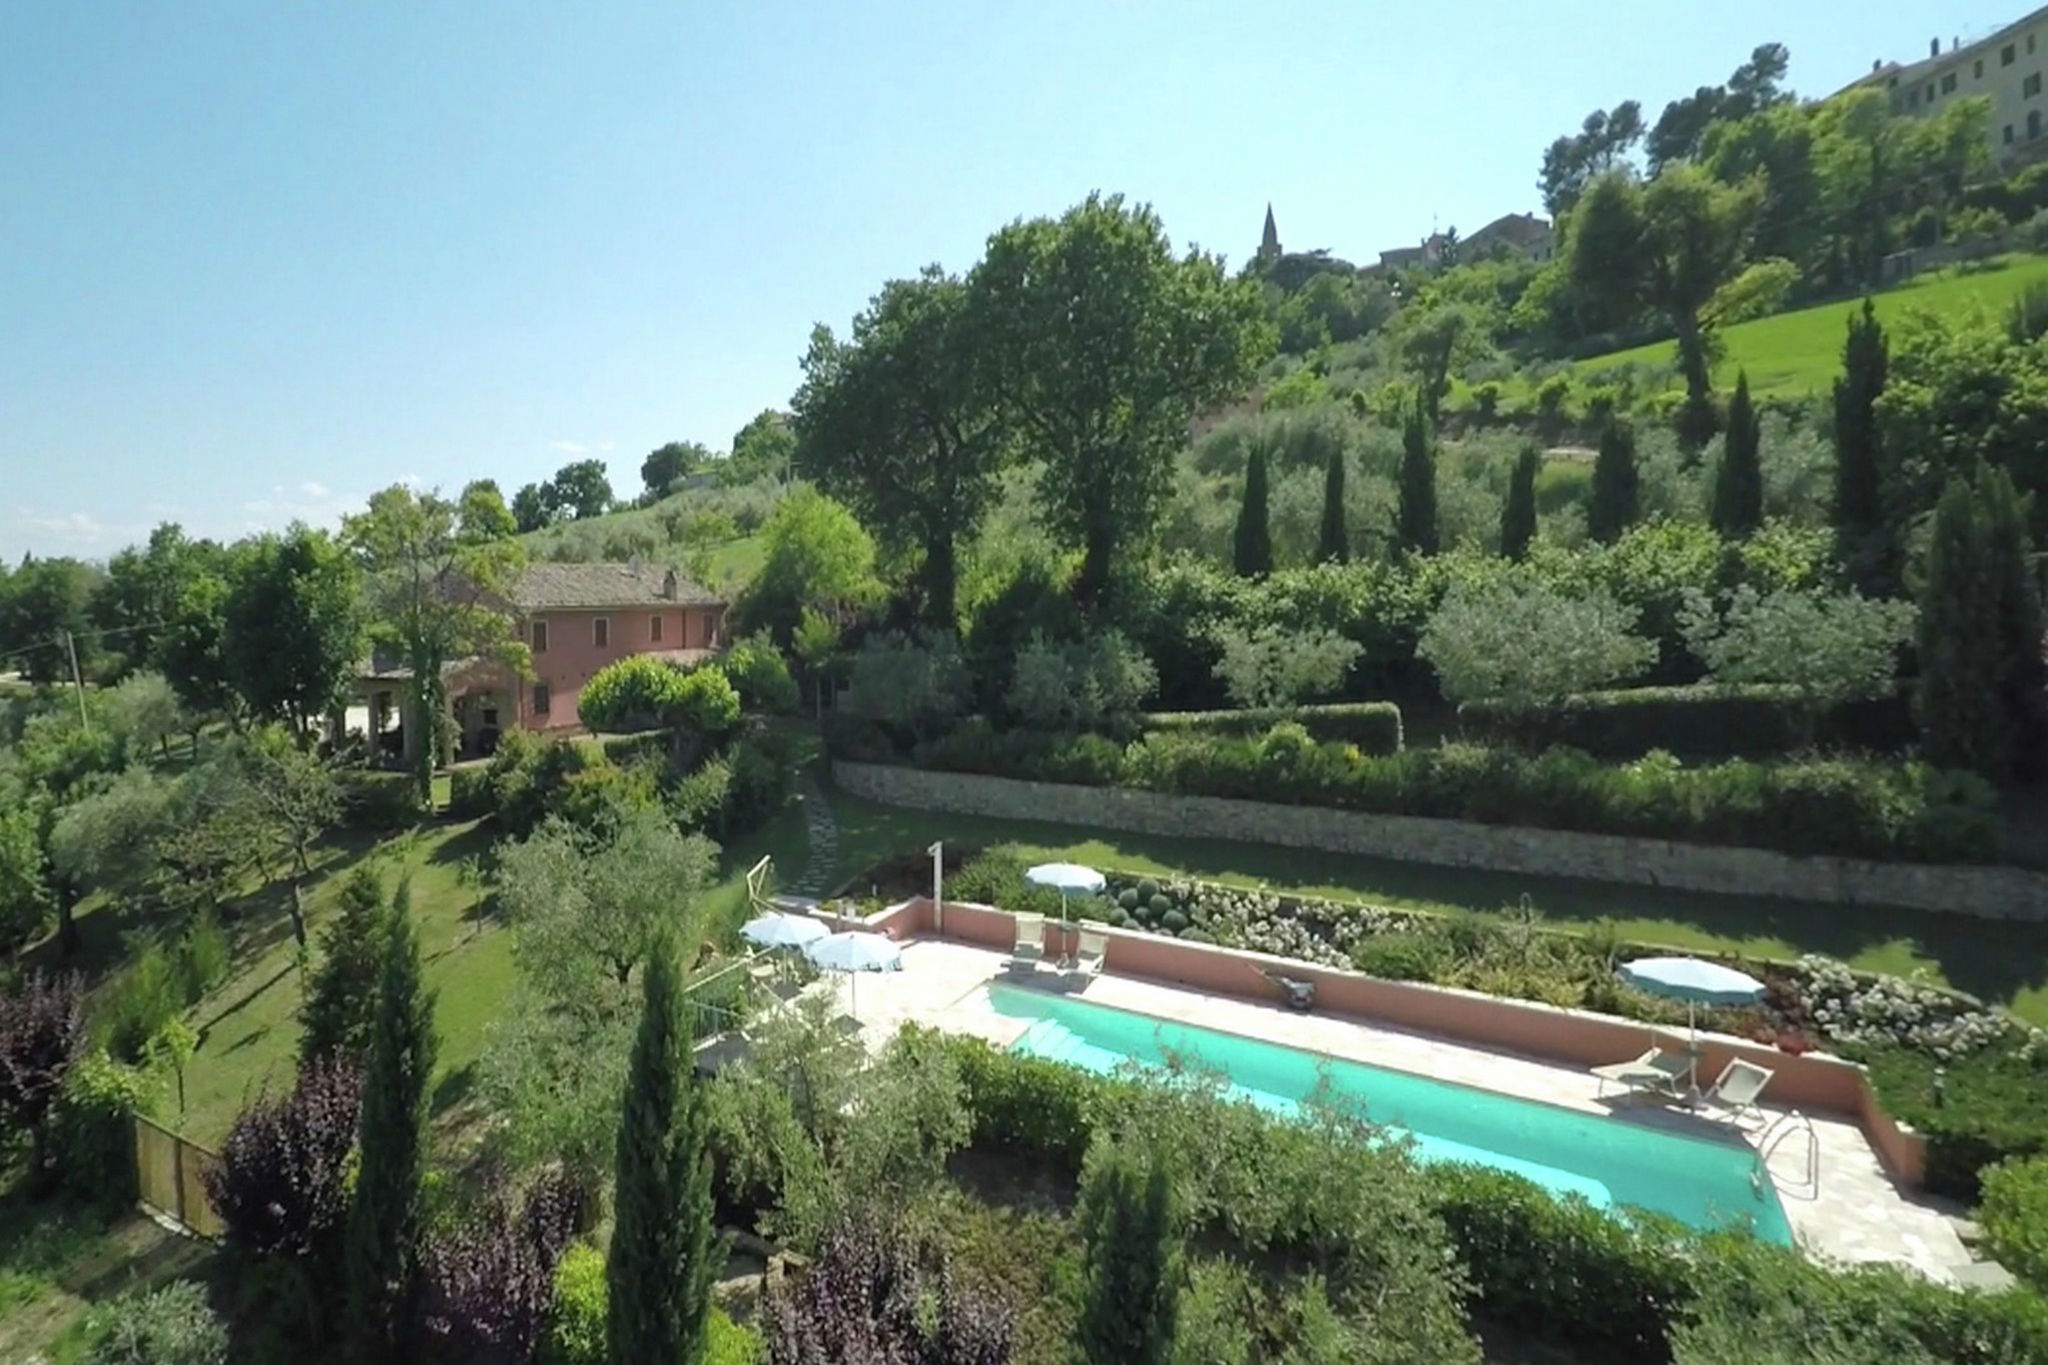 Villa with private pool and garden in the hills near Mondavio